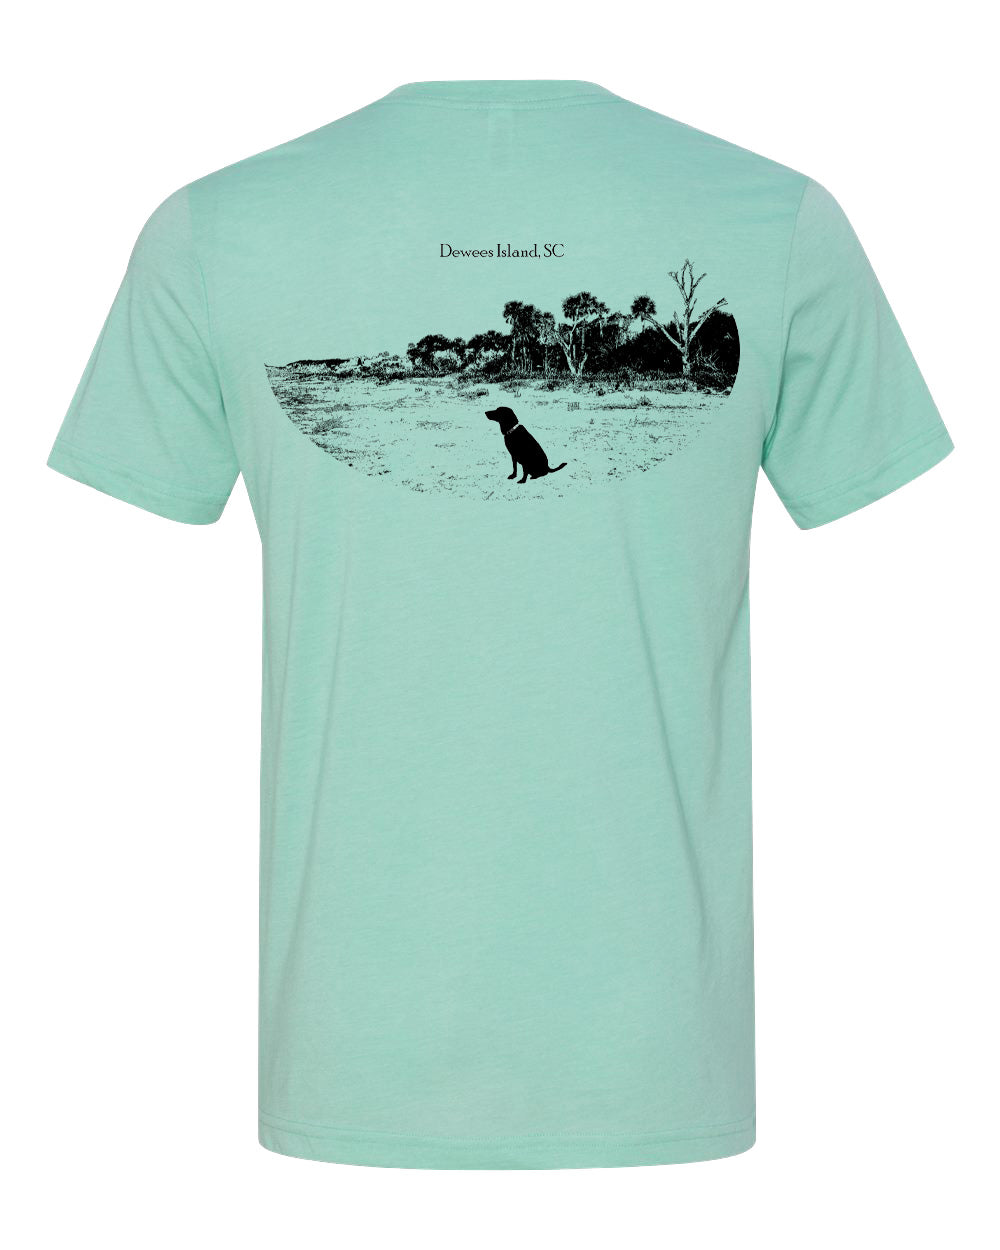 Dewees Island Short Sleeve T-shirt